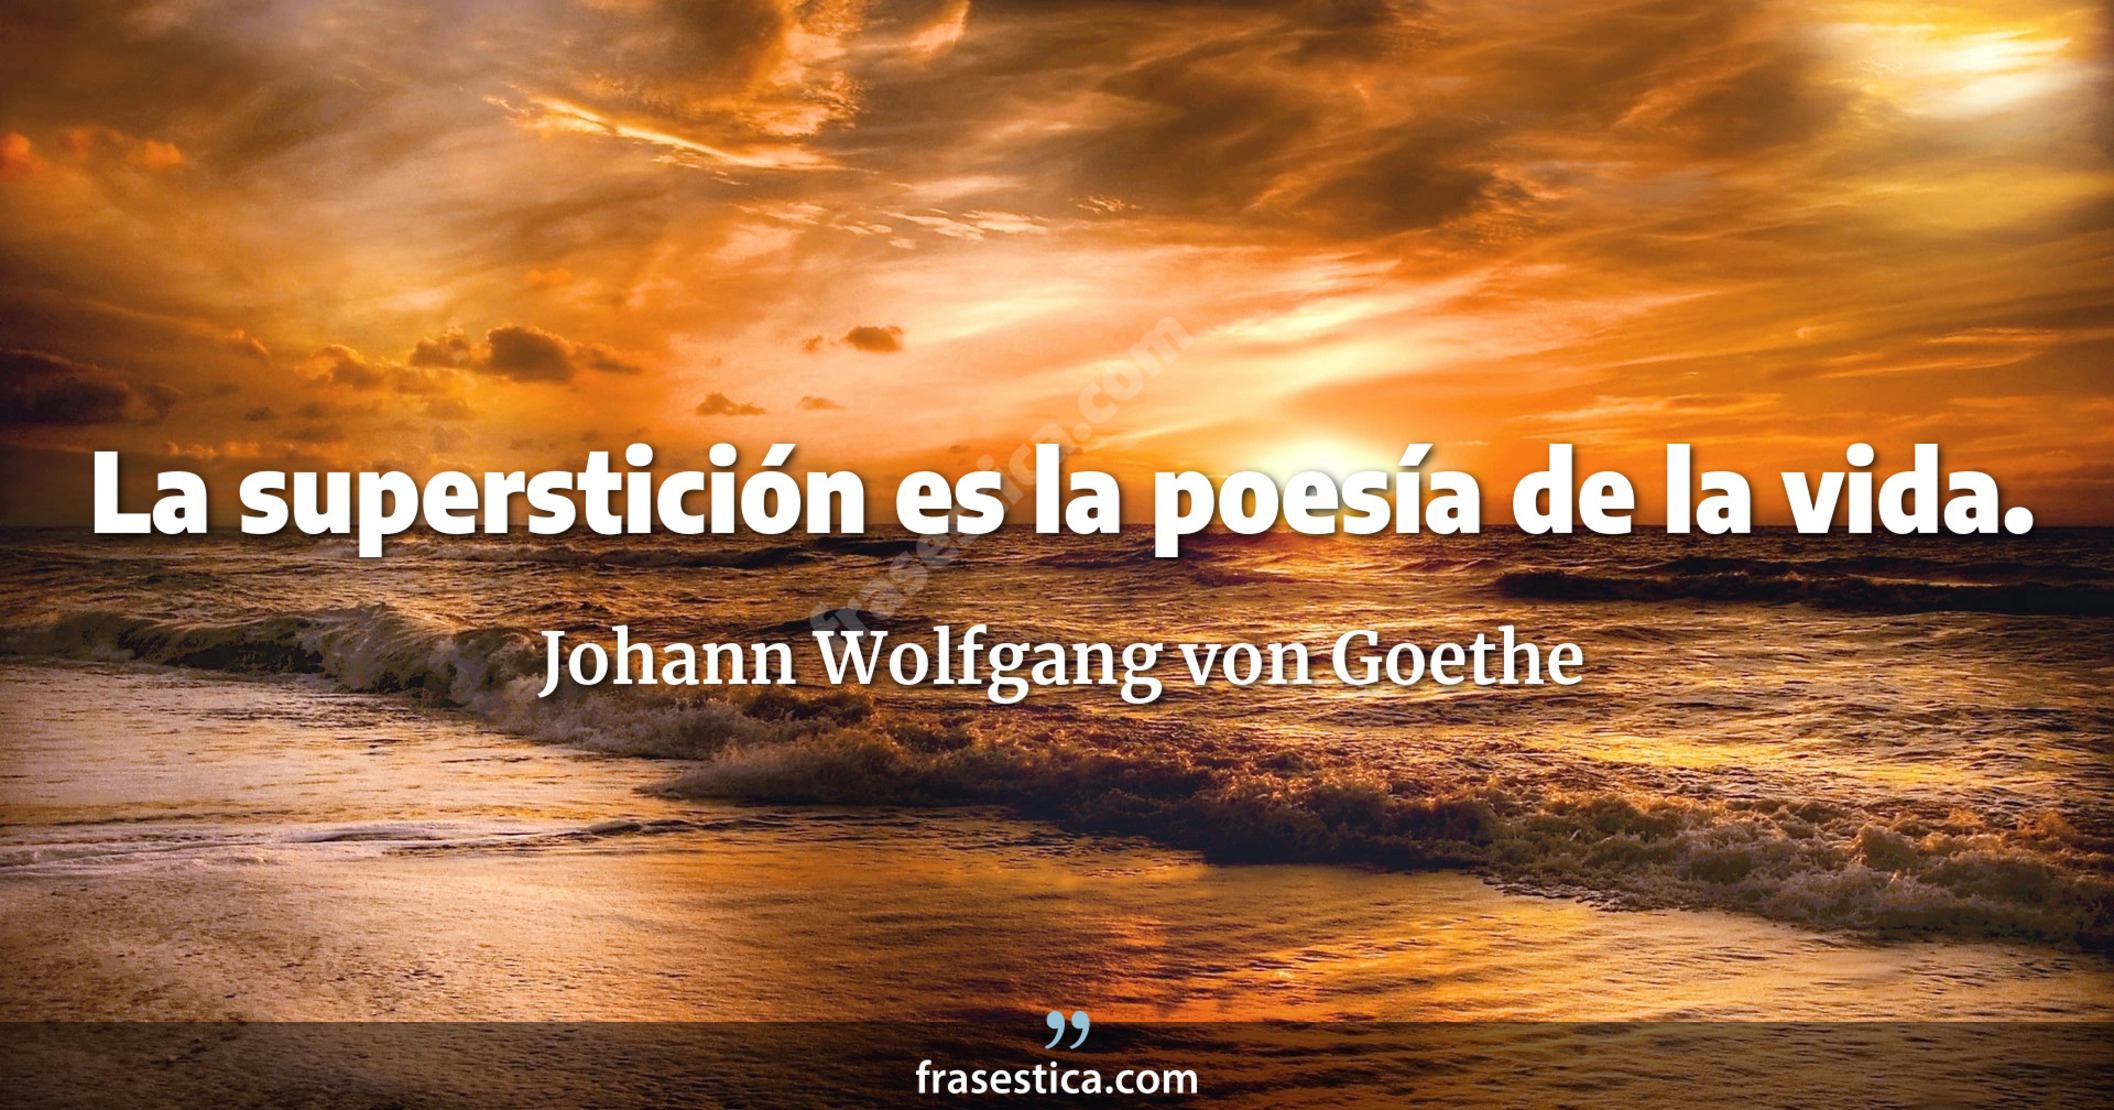 La superstición es la poesía de la vida. - Johann Wolfgang von Goethe